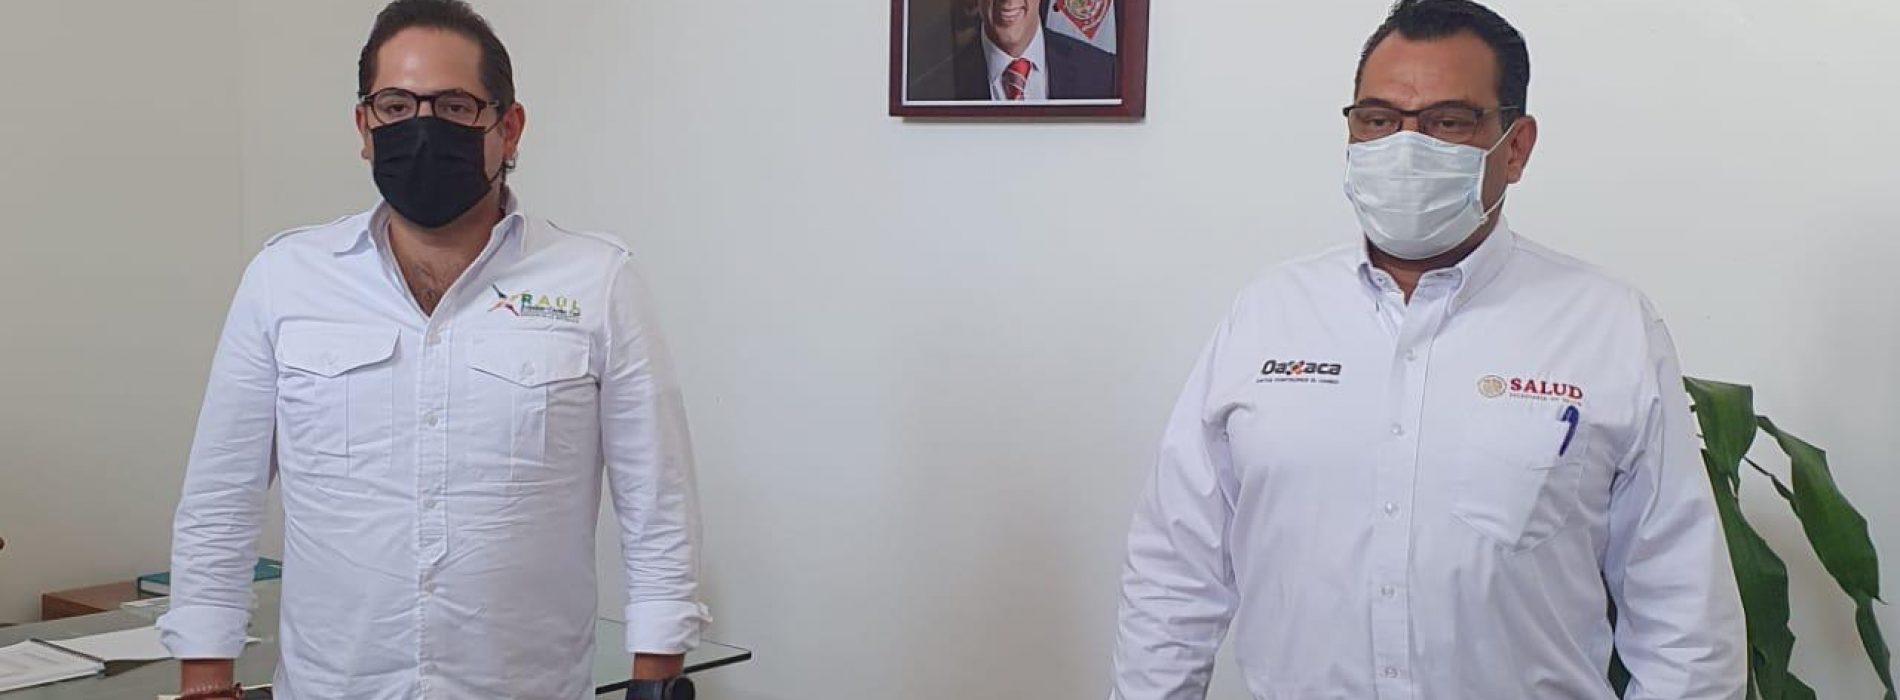 Dona Raúl Bolaños-Cacho Cué dieta legislativa para equipamiento a profesionales de la salud y sanitizar clínicas de Oaxaca